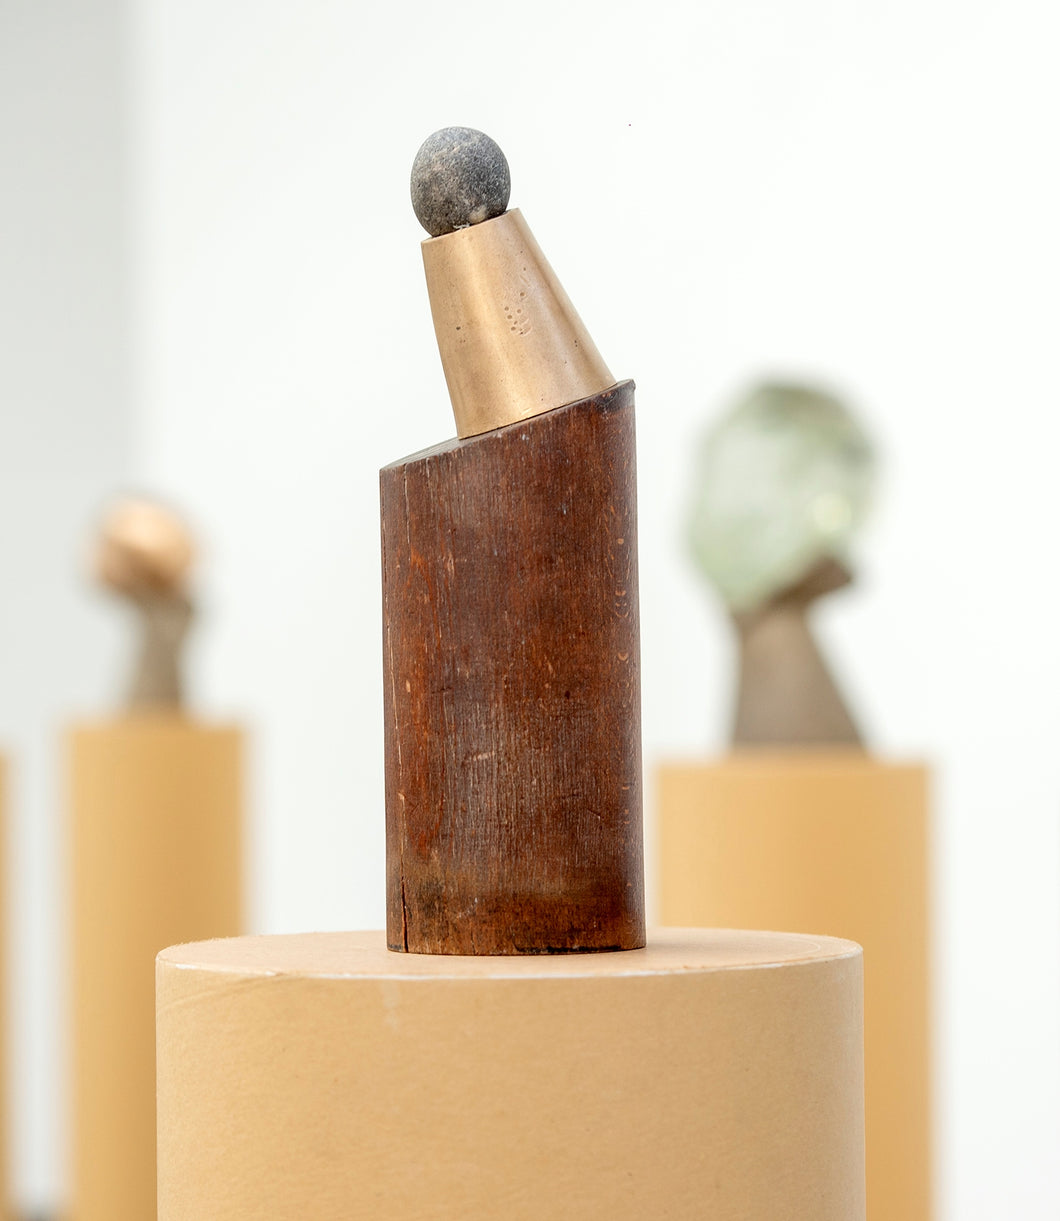 Catherine FRANÇOIS, Tête Totem, Bois, bronze et silex, 32 x 10 x 10 cm, 2022